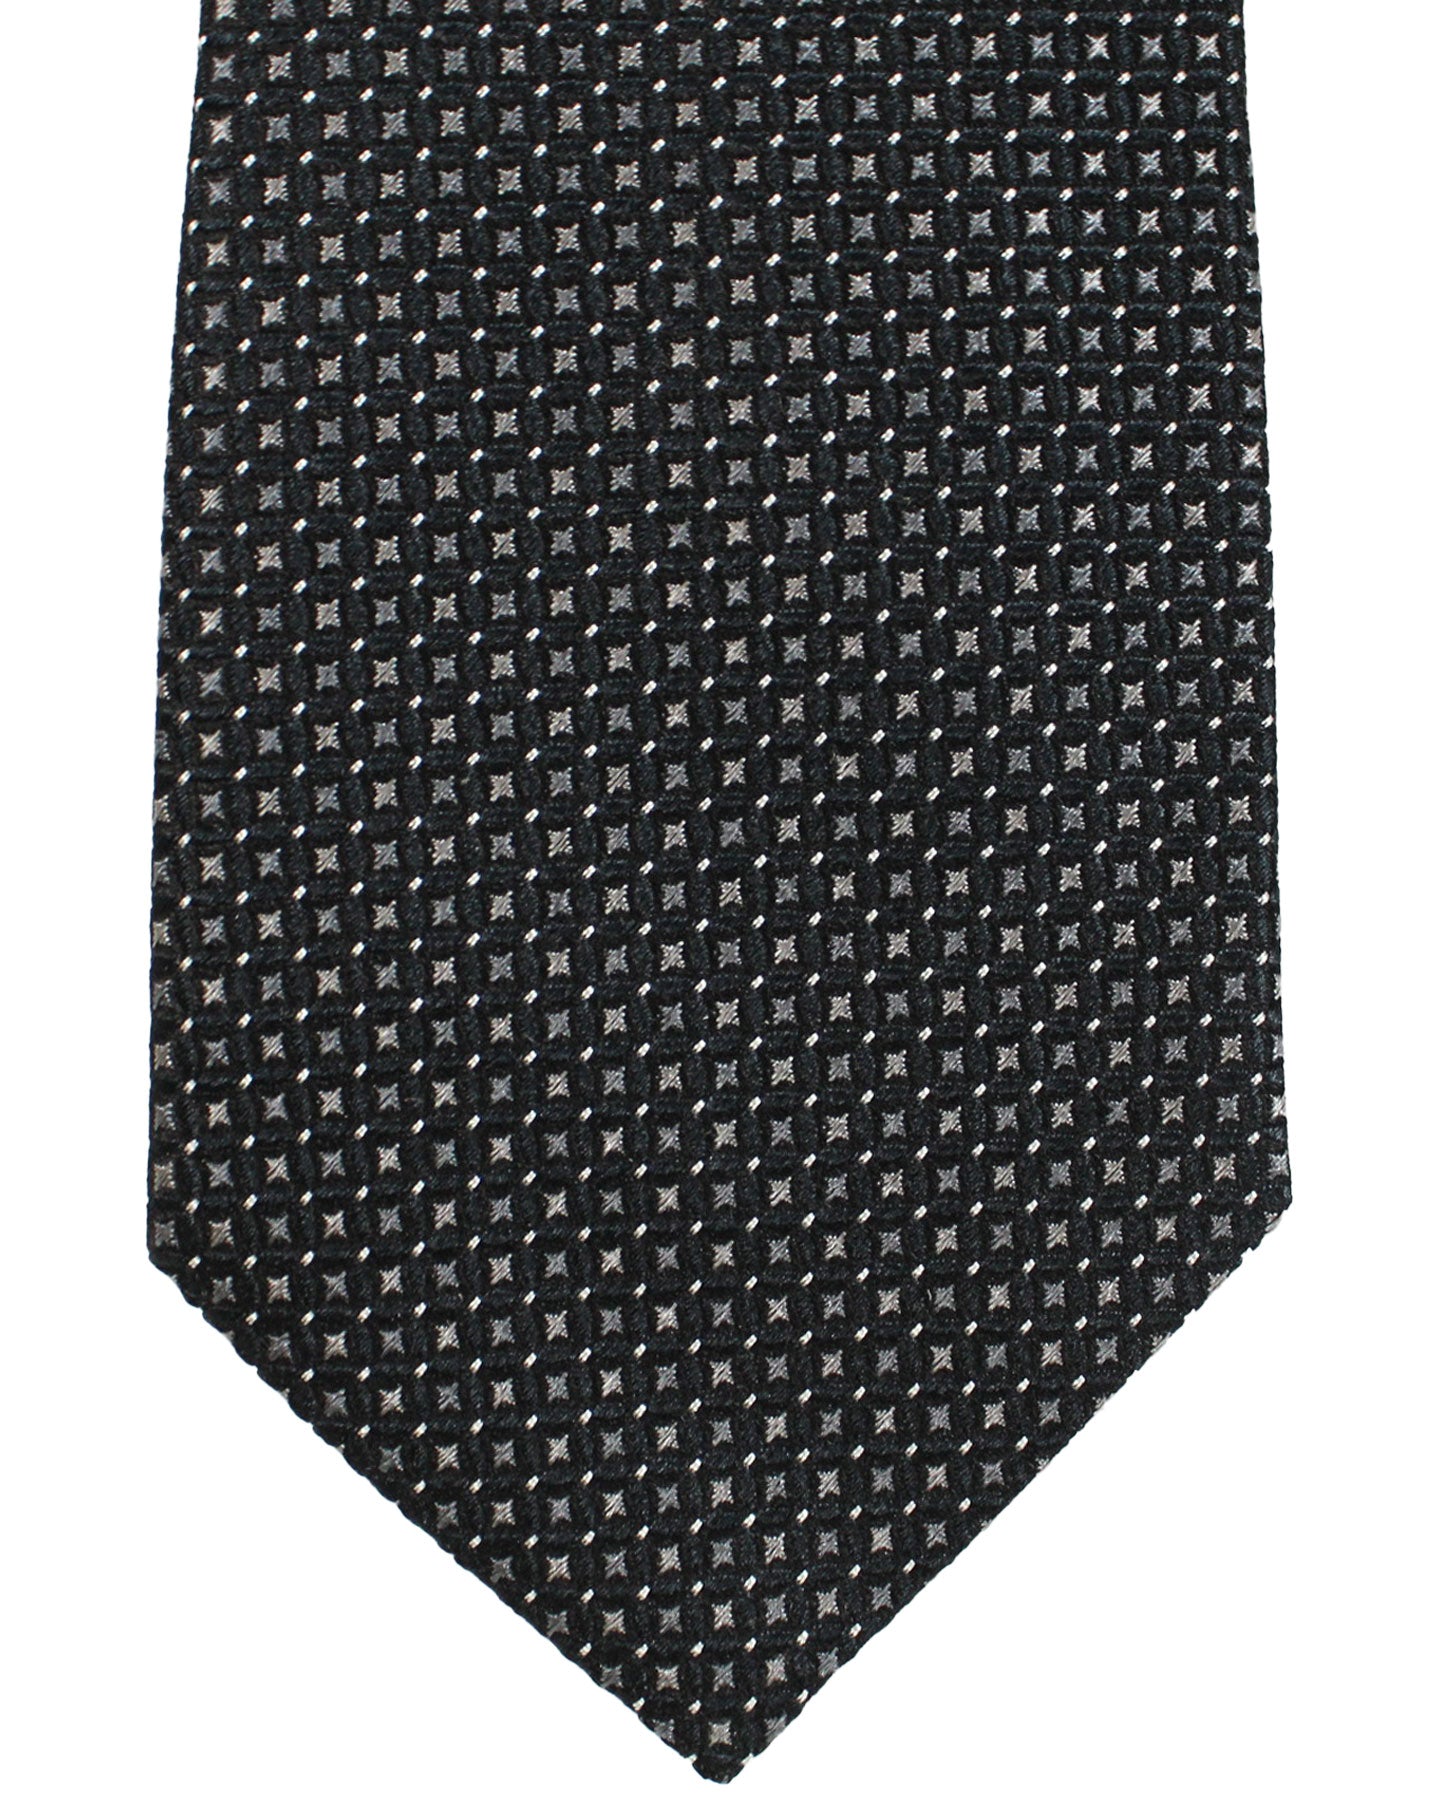 Armani Silk Tie Black Gray Silver Geometric Armani Collezioni